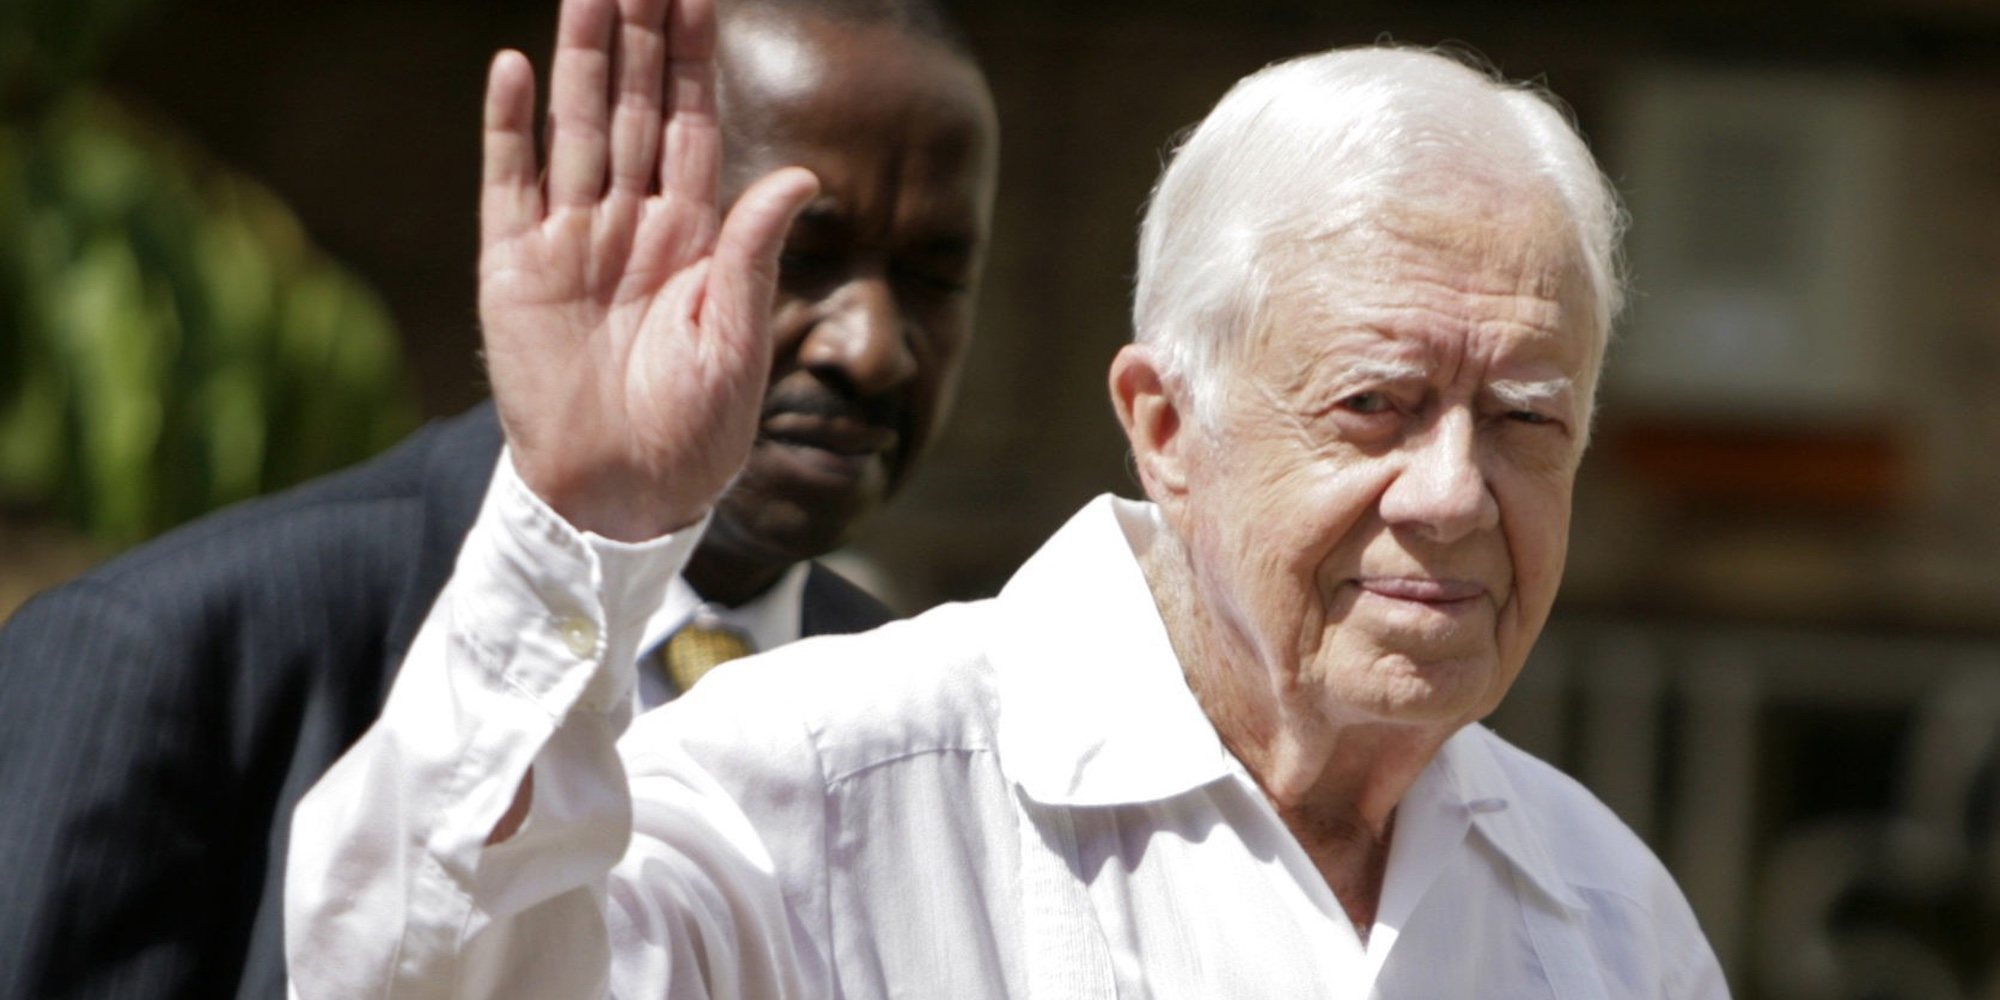 El expresidente Jimmy Carter, ingresado por una hemorragia cerebral causada por sus caídas